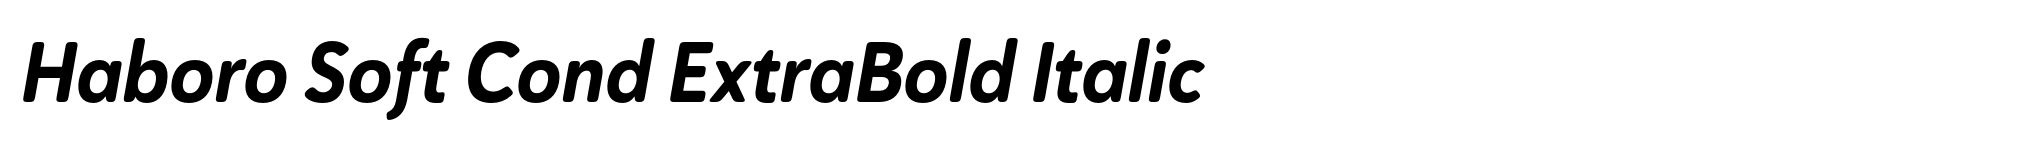 Haboro Soft Cond ExtraBold Italic image